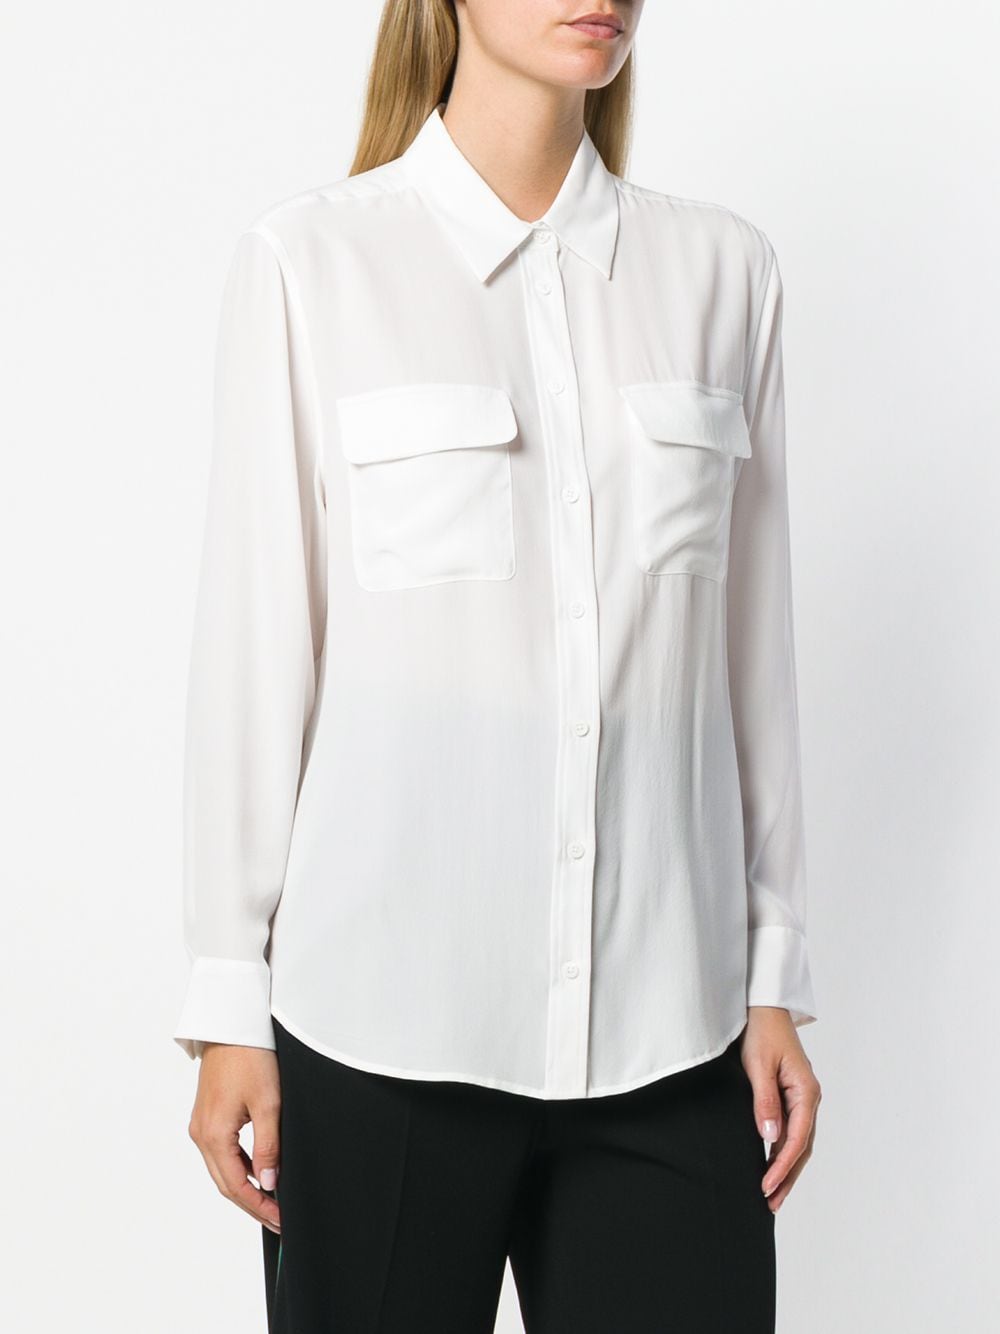 Equipement - blouse signature - blanc